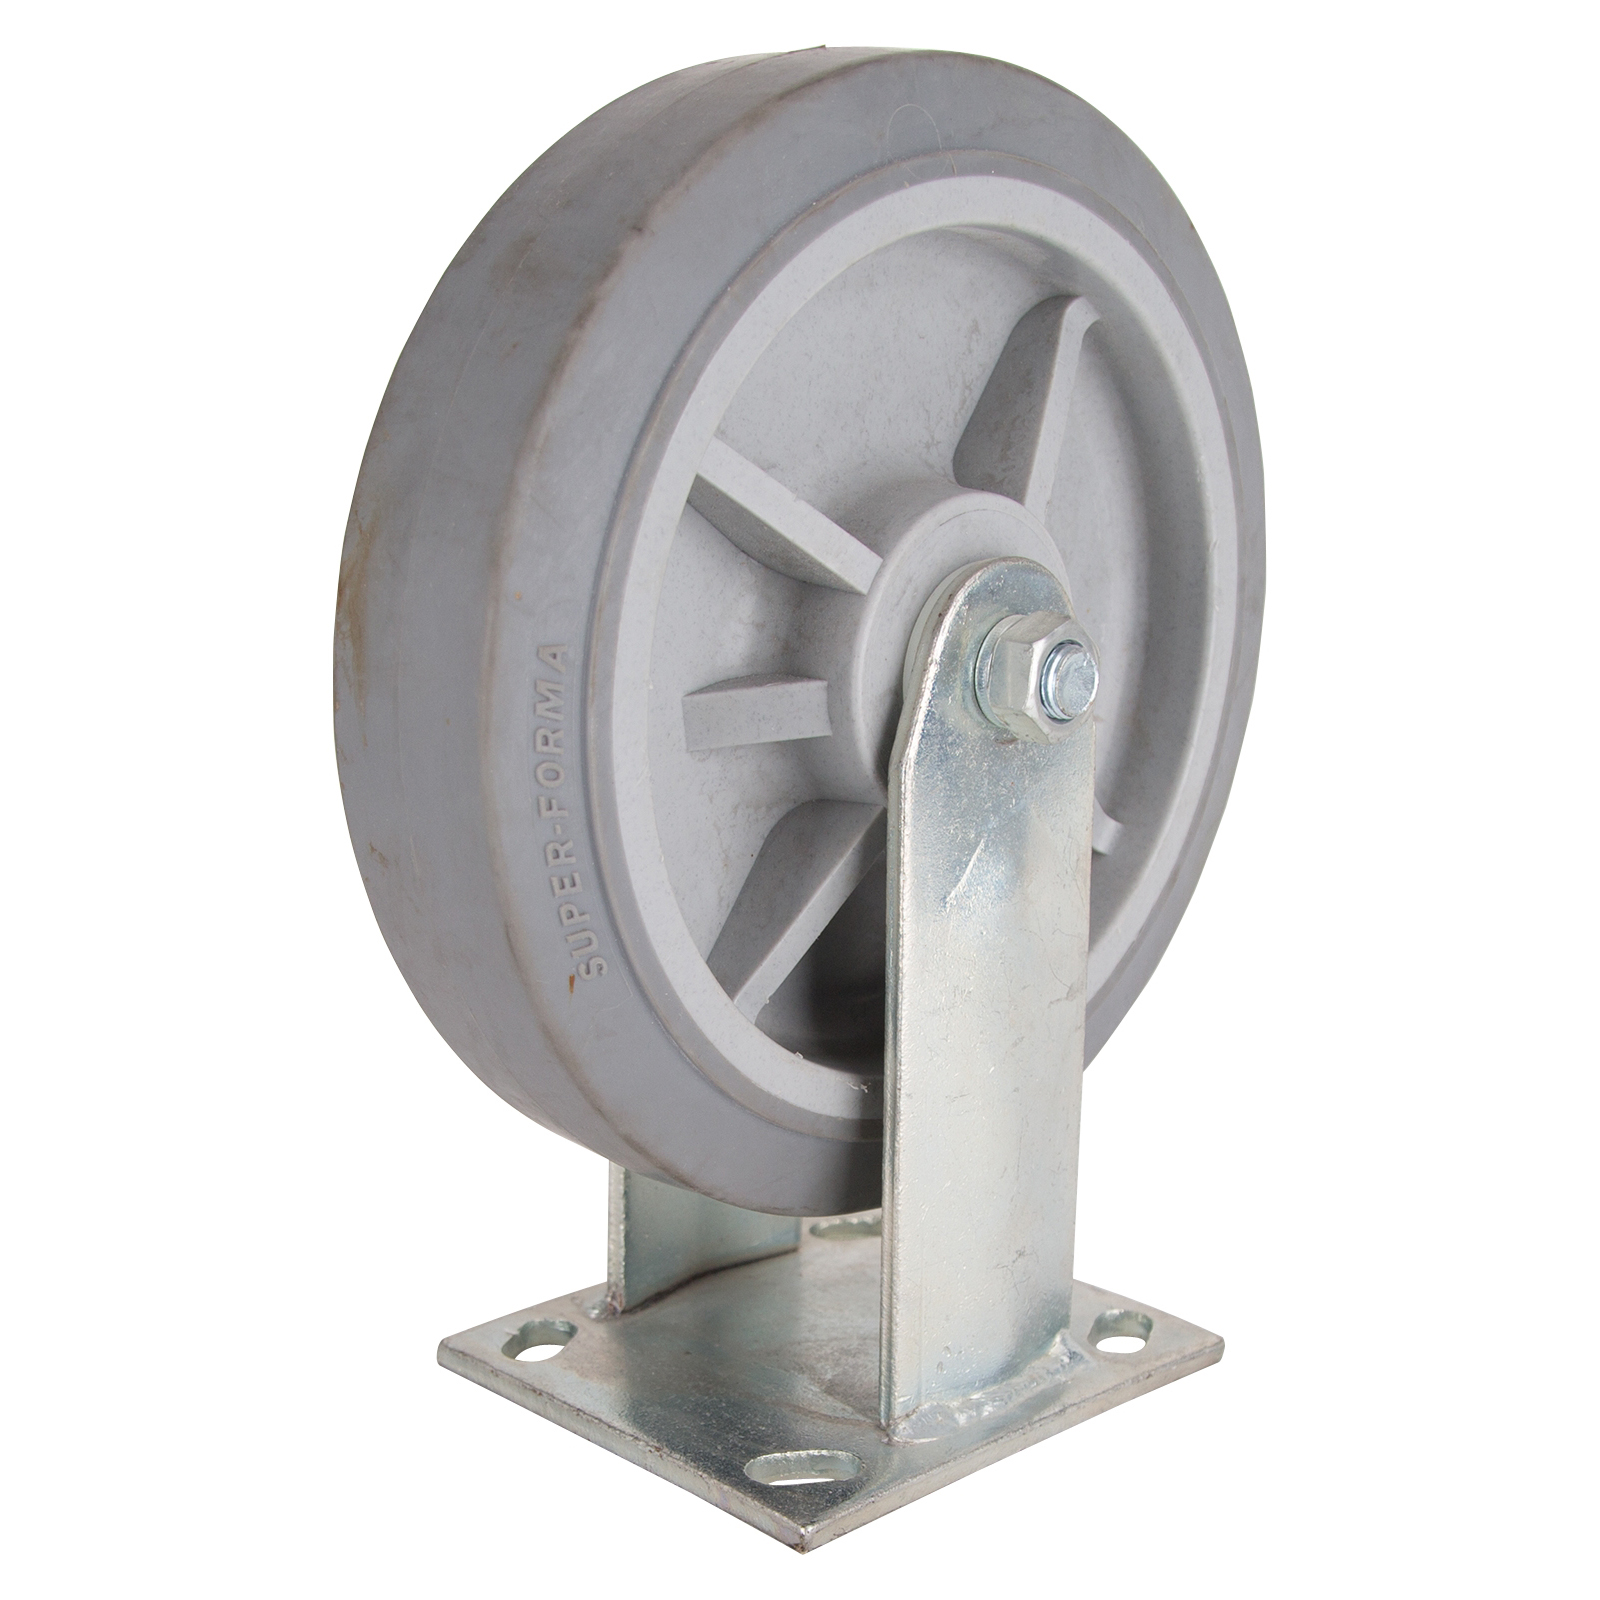 JC-T07 Rigid Caster, 8 in Dia Wheel, 2 in W Wheel, Thermoplastic Rubber Wheel, Gray, 750 lb